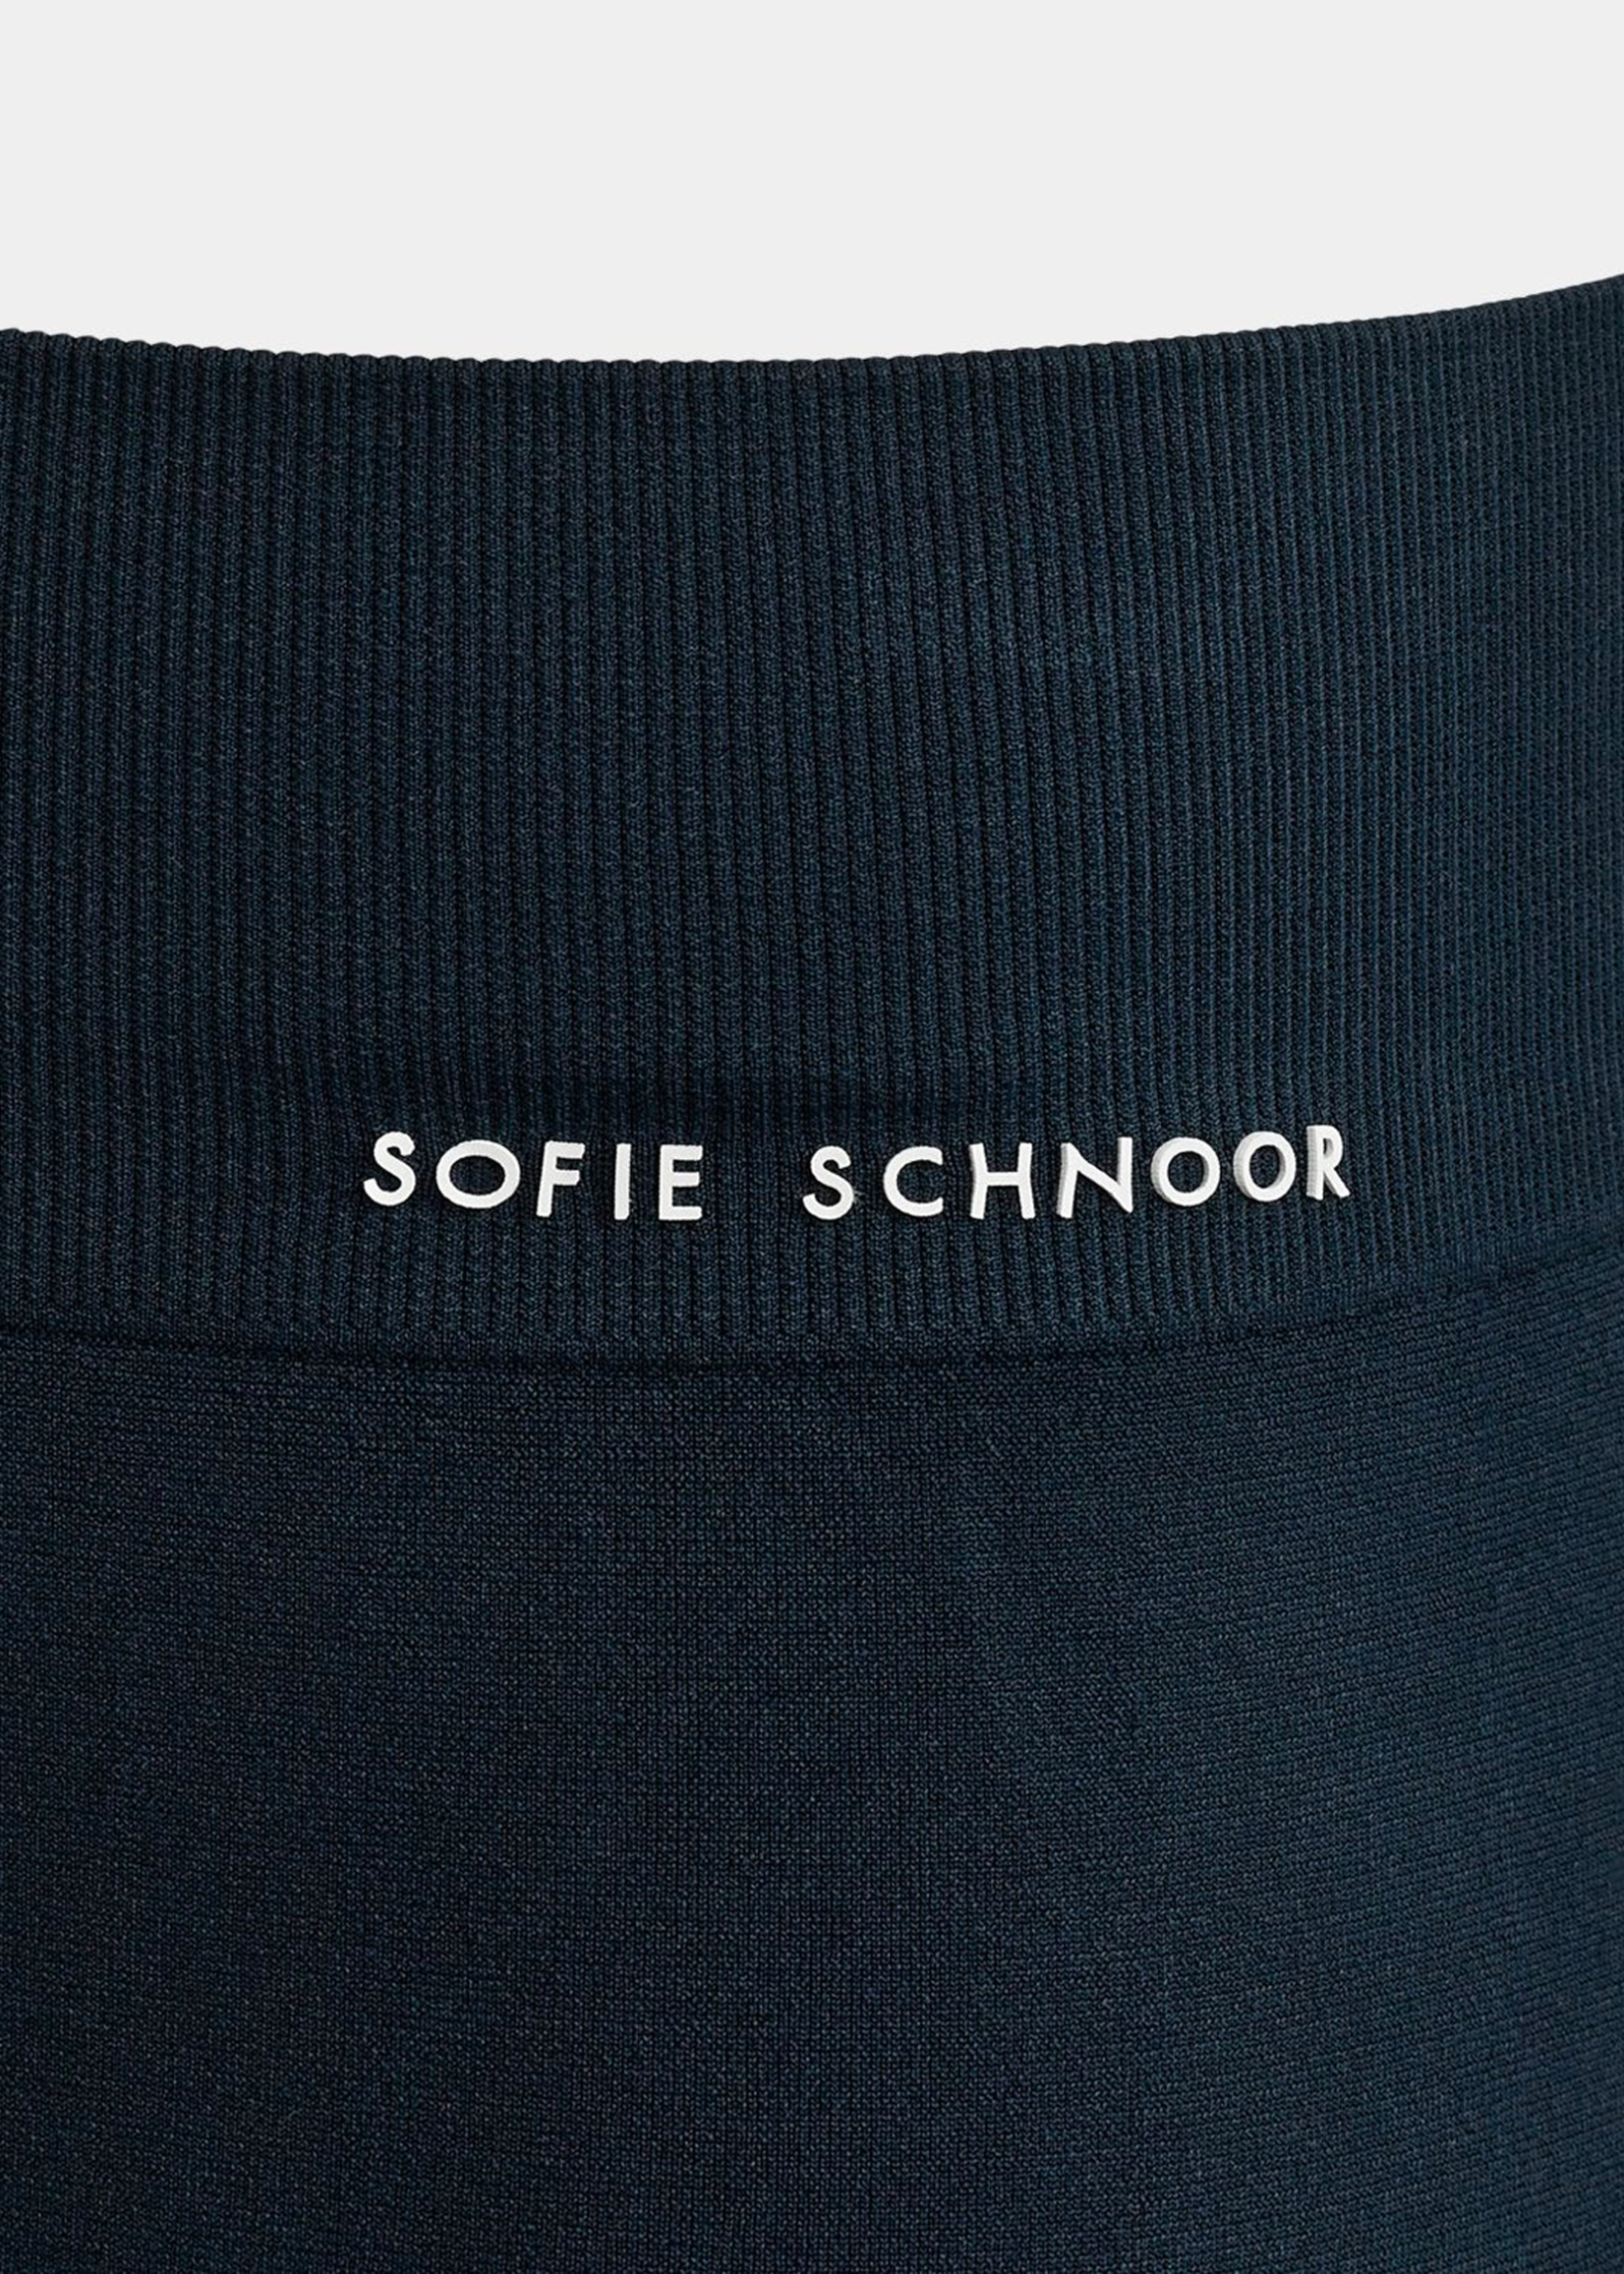 Sofie Schnoor Leggings Seamless Dark Blue